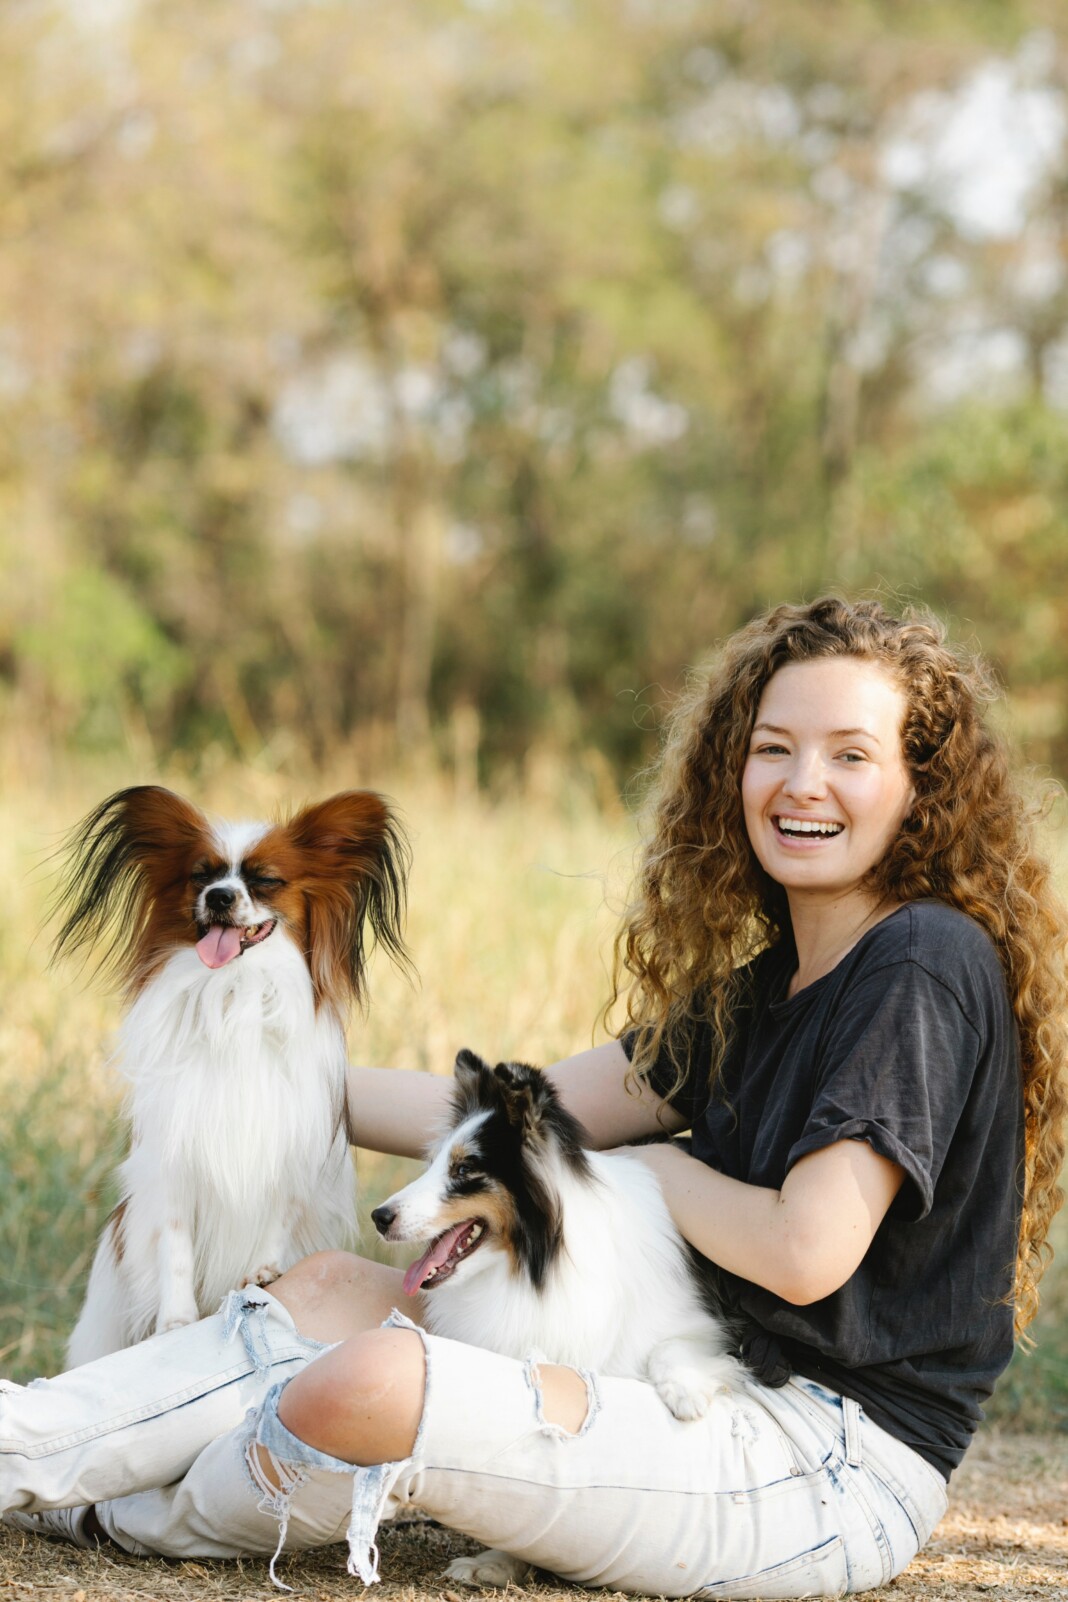 Une femme rayonnante, entourée de ses deux chiens, dégageant une aura de joie et de bonheur, illustrant la connexion profonde entre l'âme humaine et le monde animal.